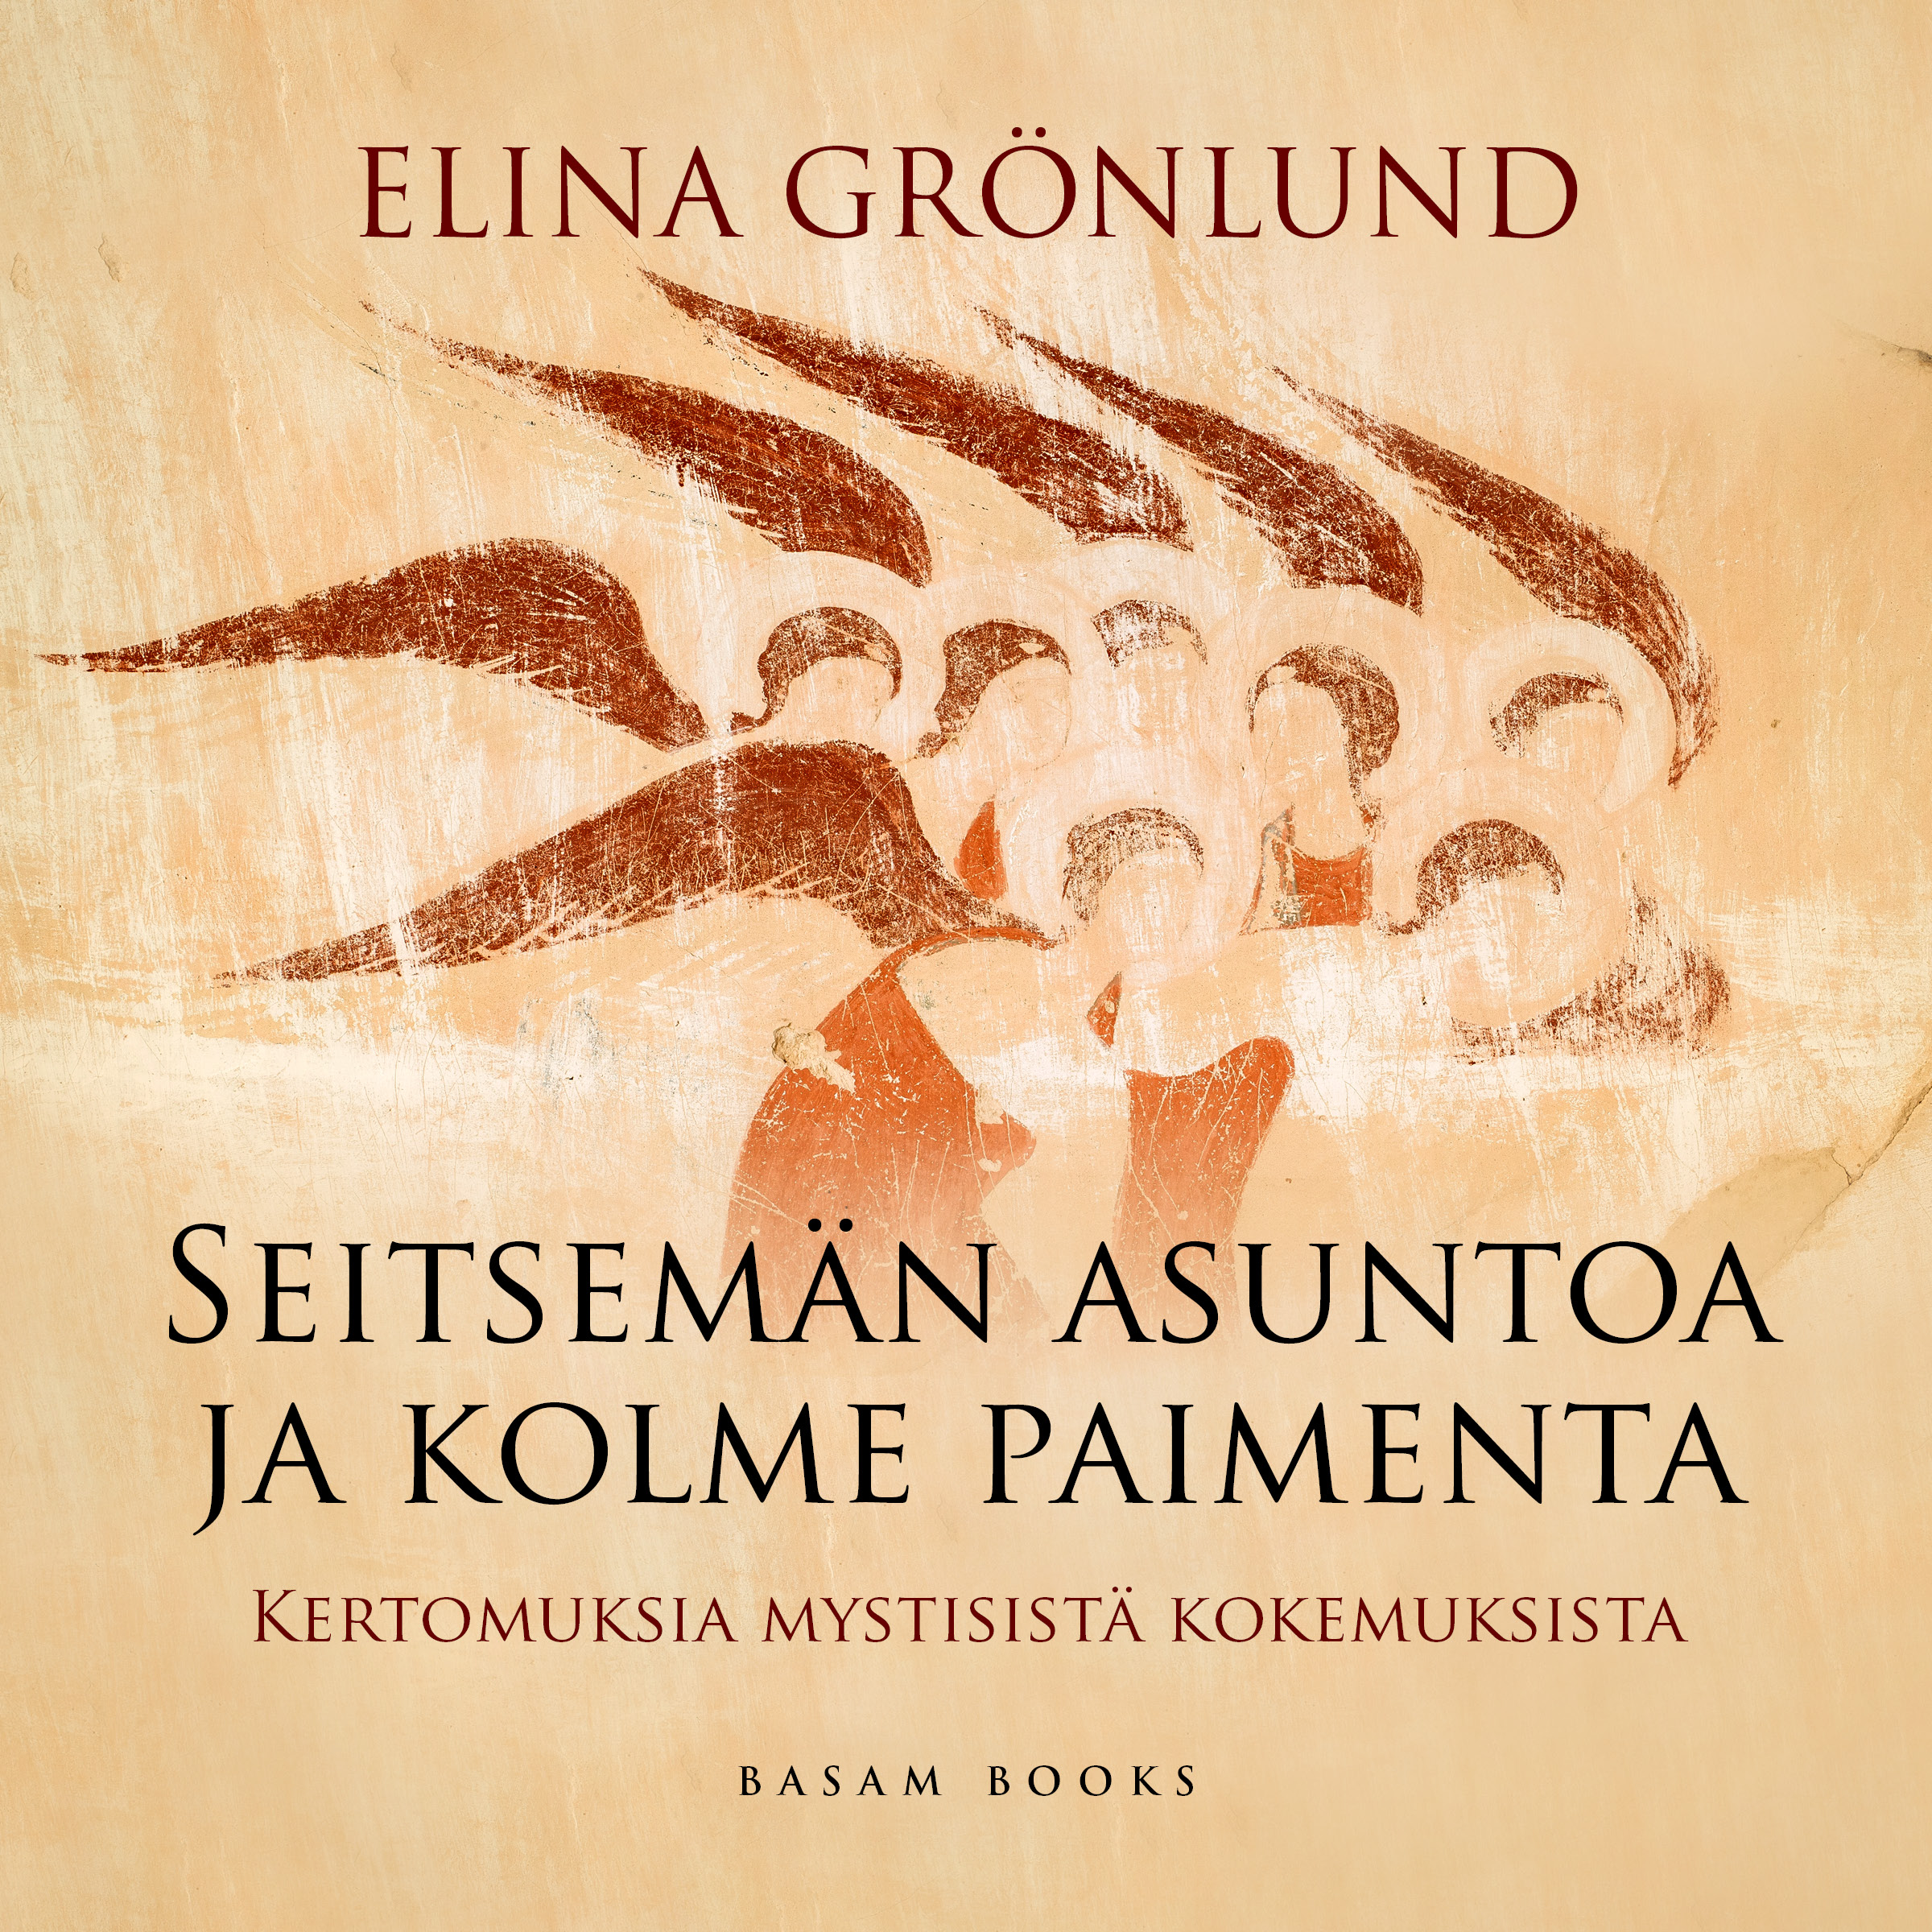 Grönlund, Elina - Seitsemän asuntoa ja kolme paimenta, äänikirja